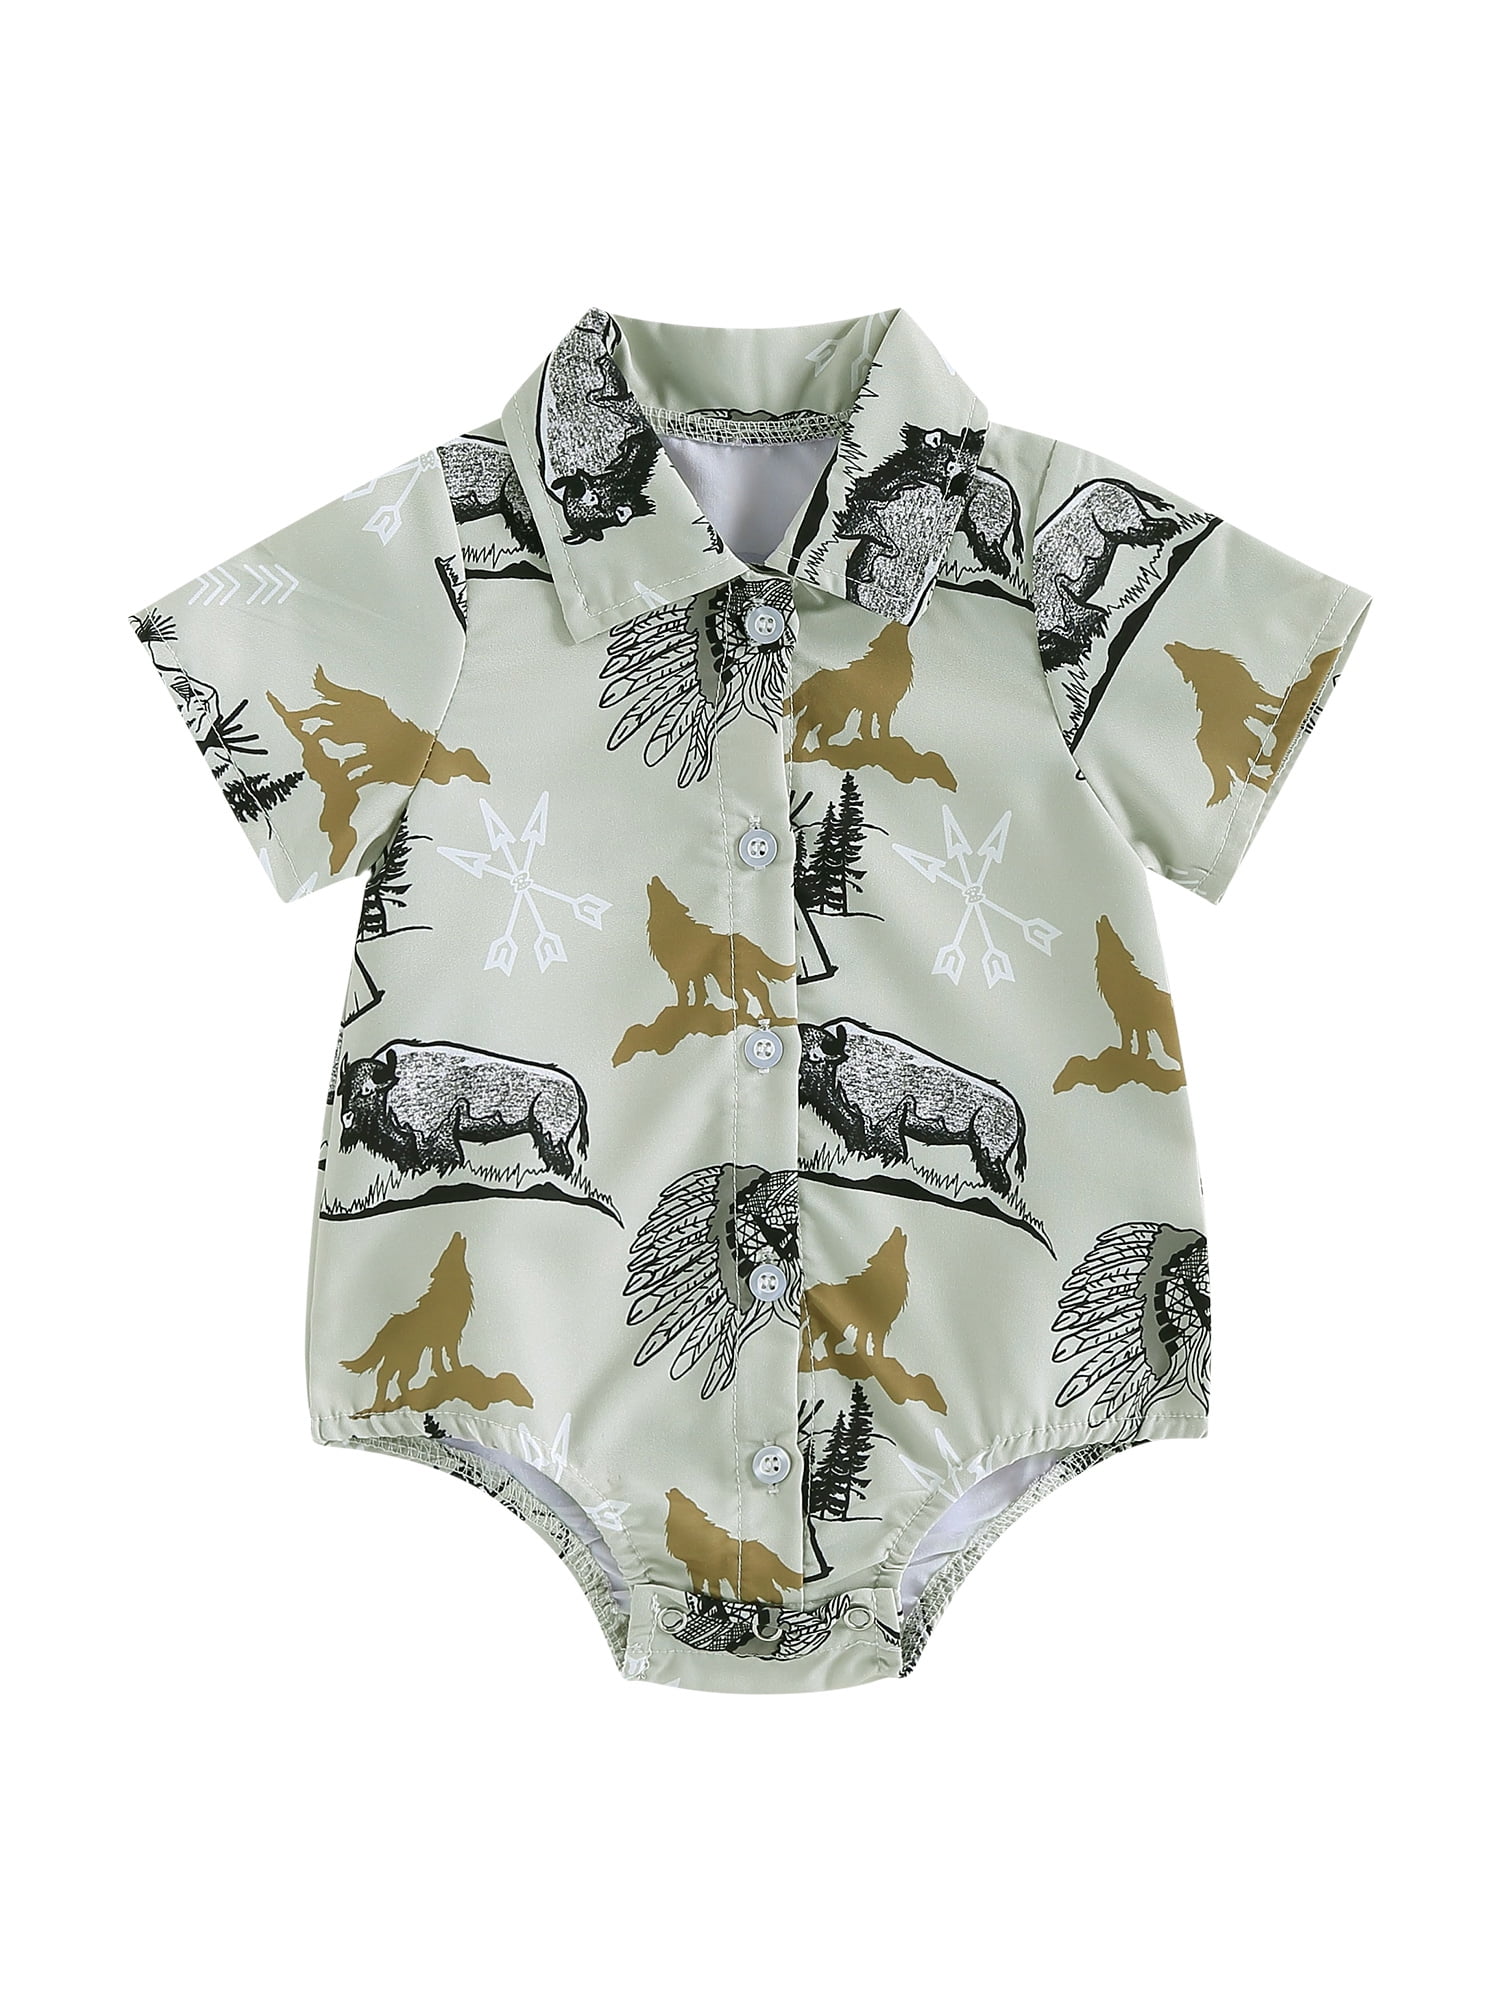 Western Newborn Baby Girl Boy Clothes Romper Onesie Cow/Dinosaur